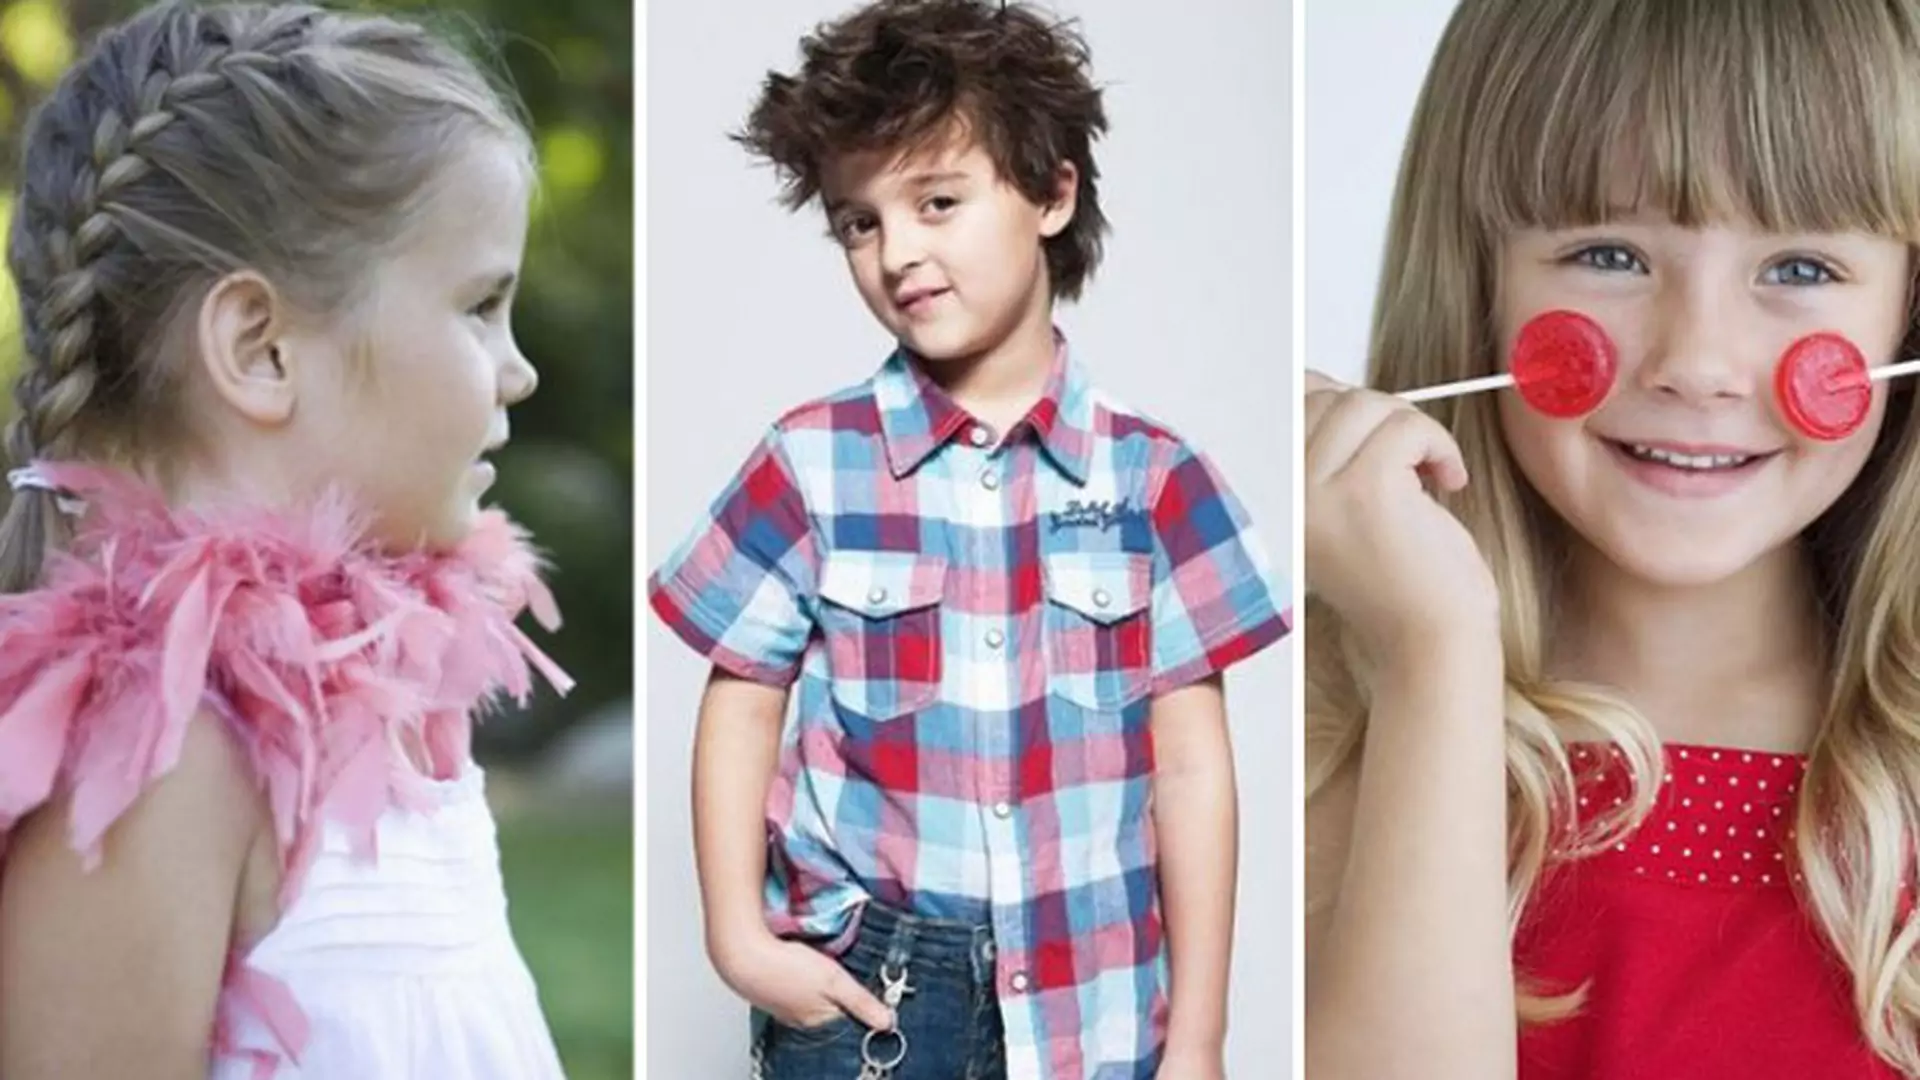 Fryzury dla dzieci: 30 propozycji dla chłopców i dziewczynek